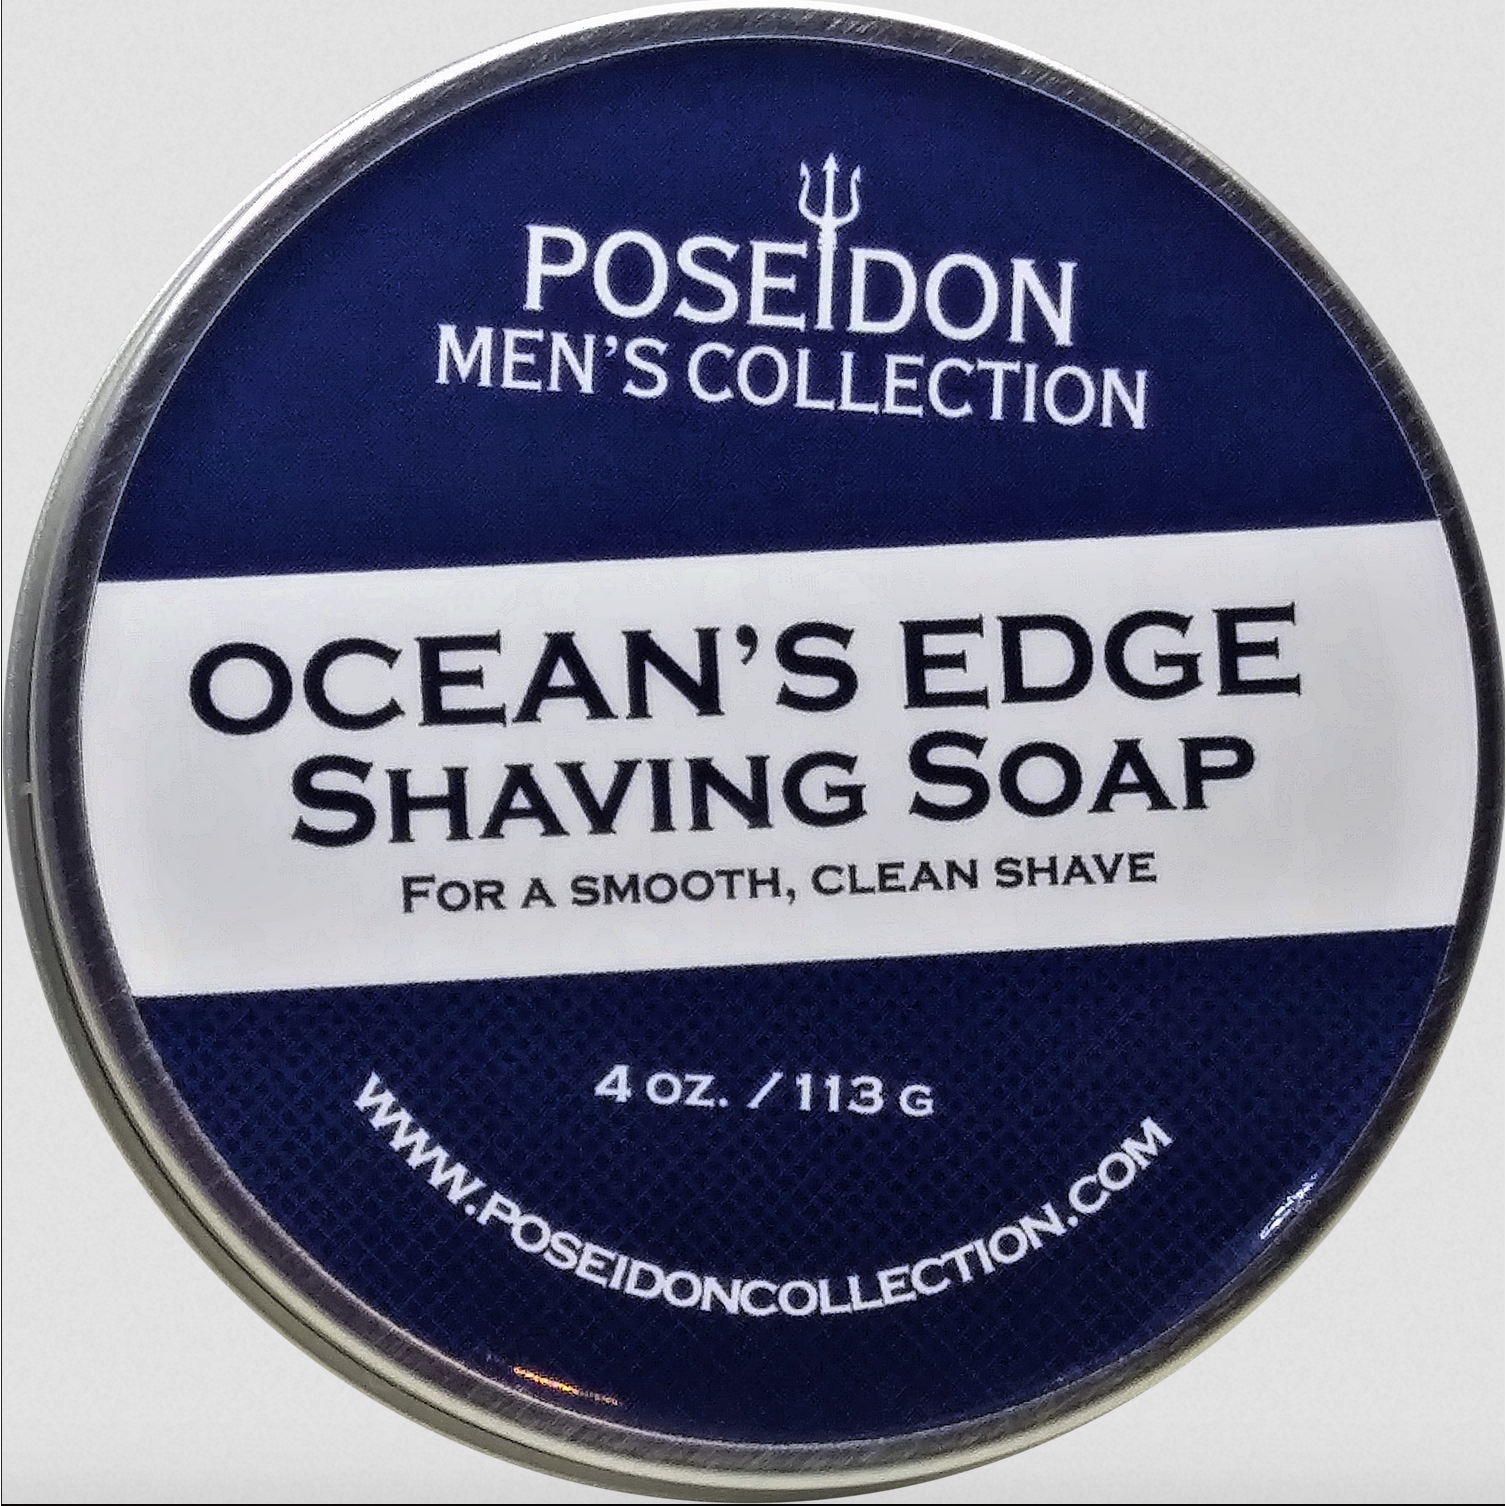 Ocean's Edge Shaving Soap